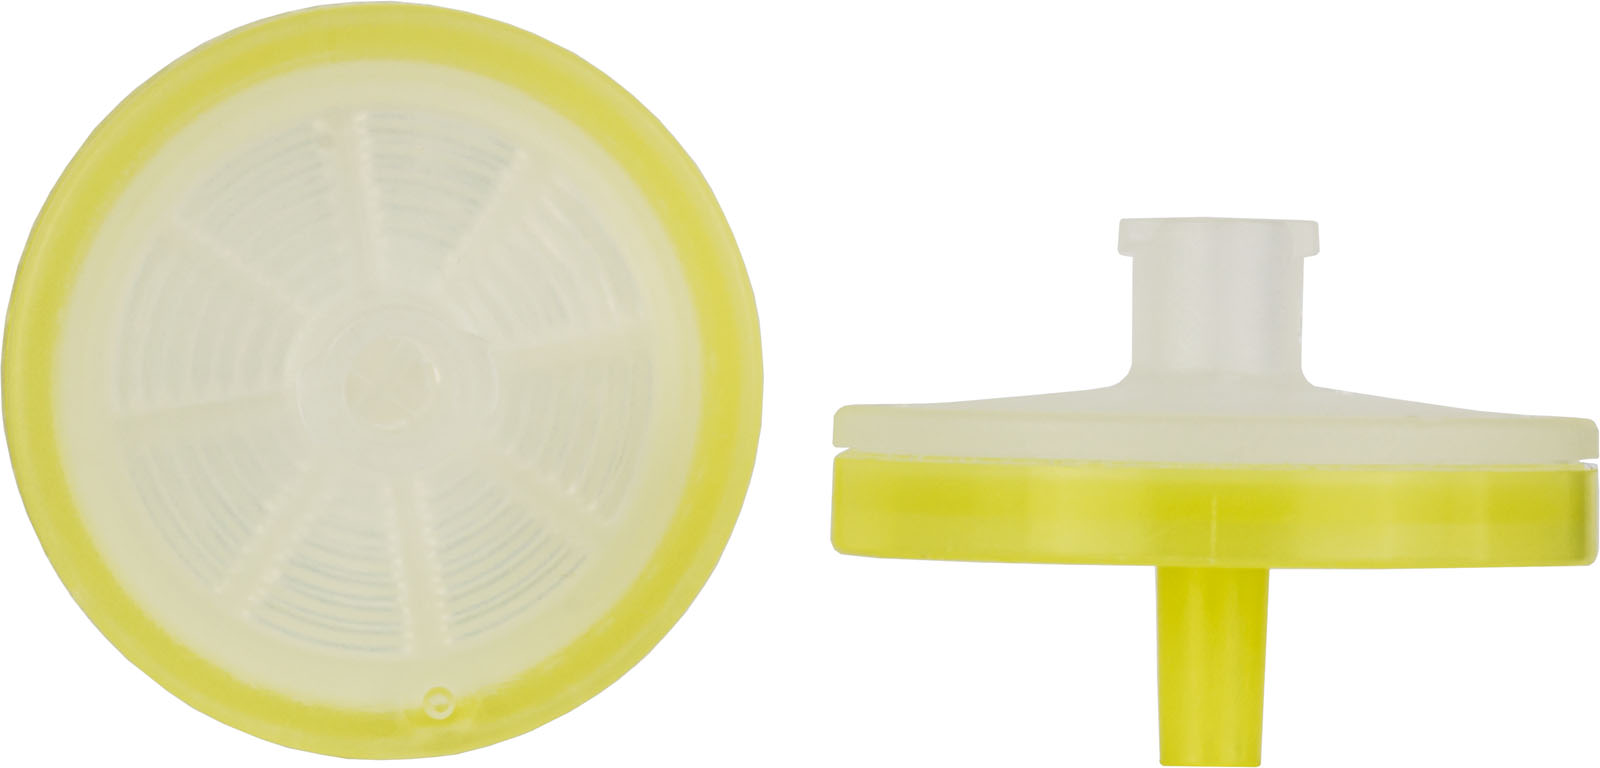 CHROMAFIL Einmalfilter A-45/25 BIGbox Membranmaterial: Cellulosemischester (MV) Porendurchm.: 0,45 µm, Membrandurchm.: 25 mm Farbcode oben: farblos, Farbcode unten: gelb BIGbox à 400 St. in PE-Schraubdose